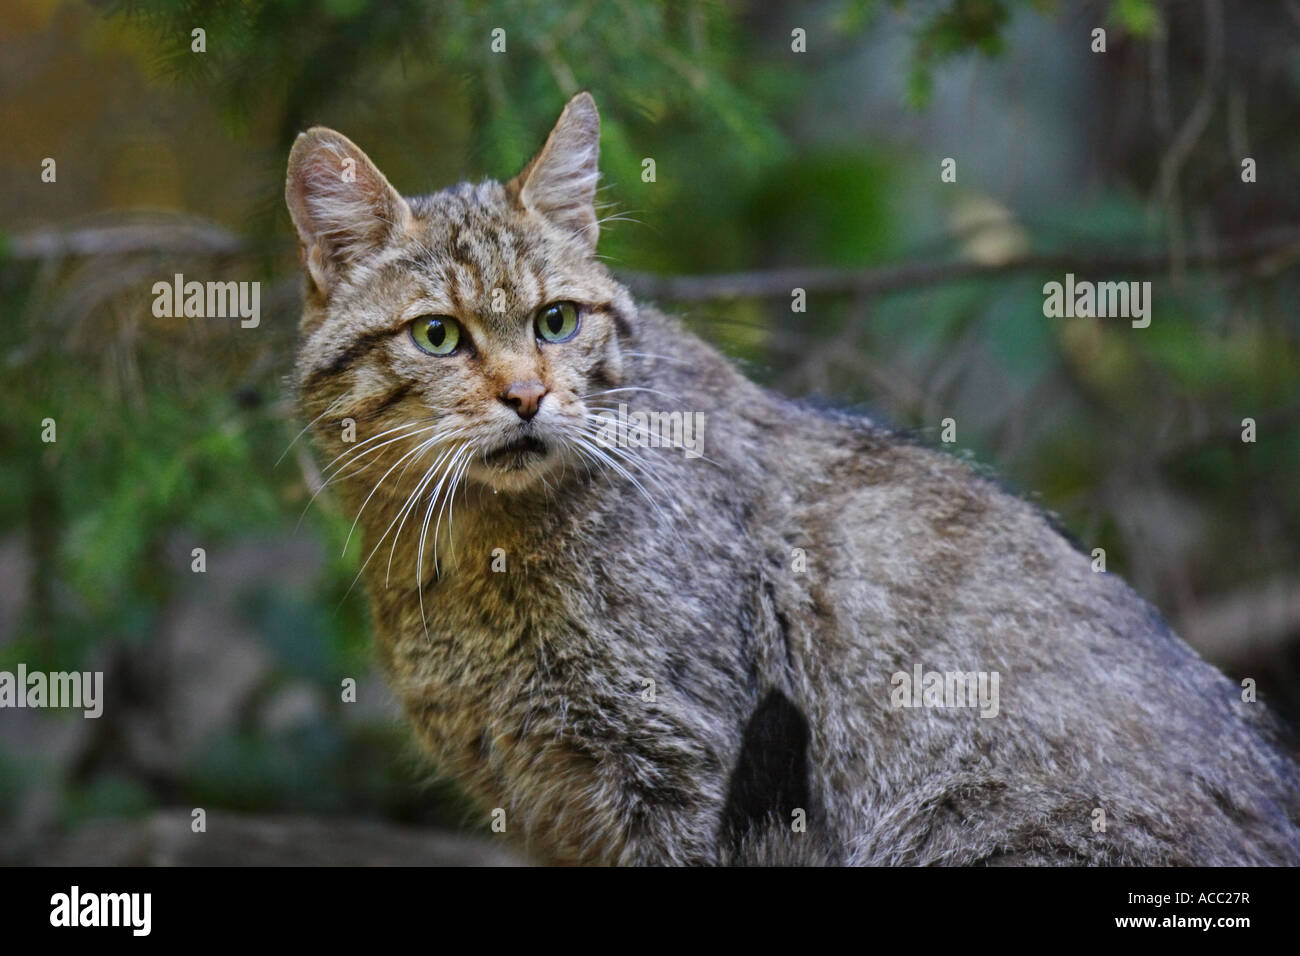 Wildkatze, gato salvaje, Felis silvestris Foto de stock